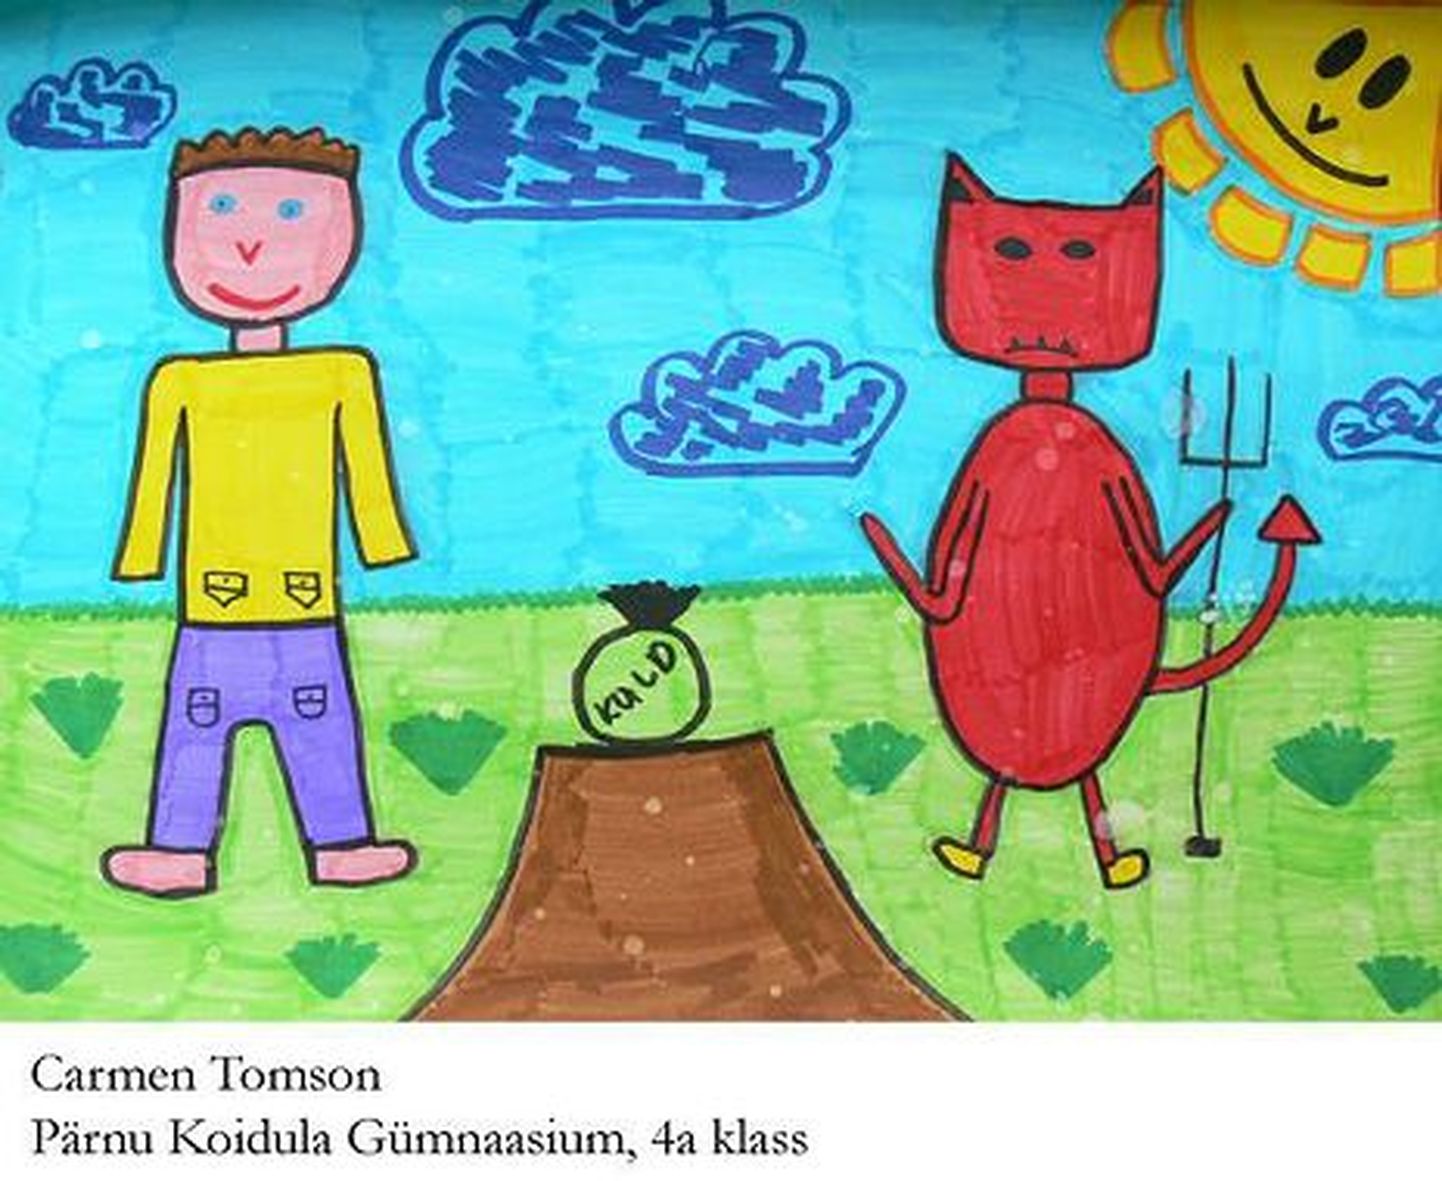 Koidula kooli neljandiku Carmen Tomsoni pilt Leedu muinasjutu ainetel.